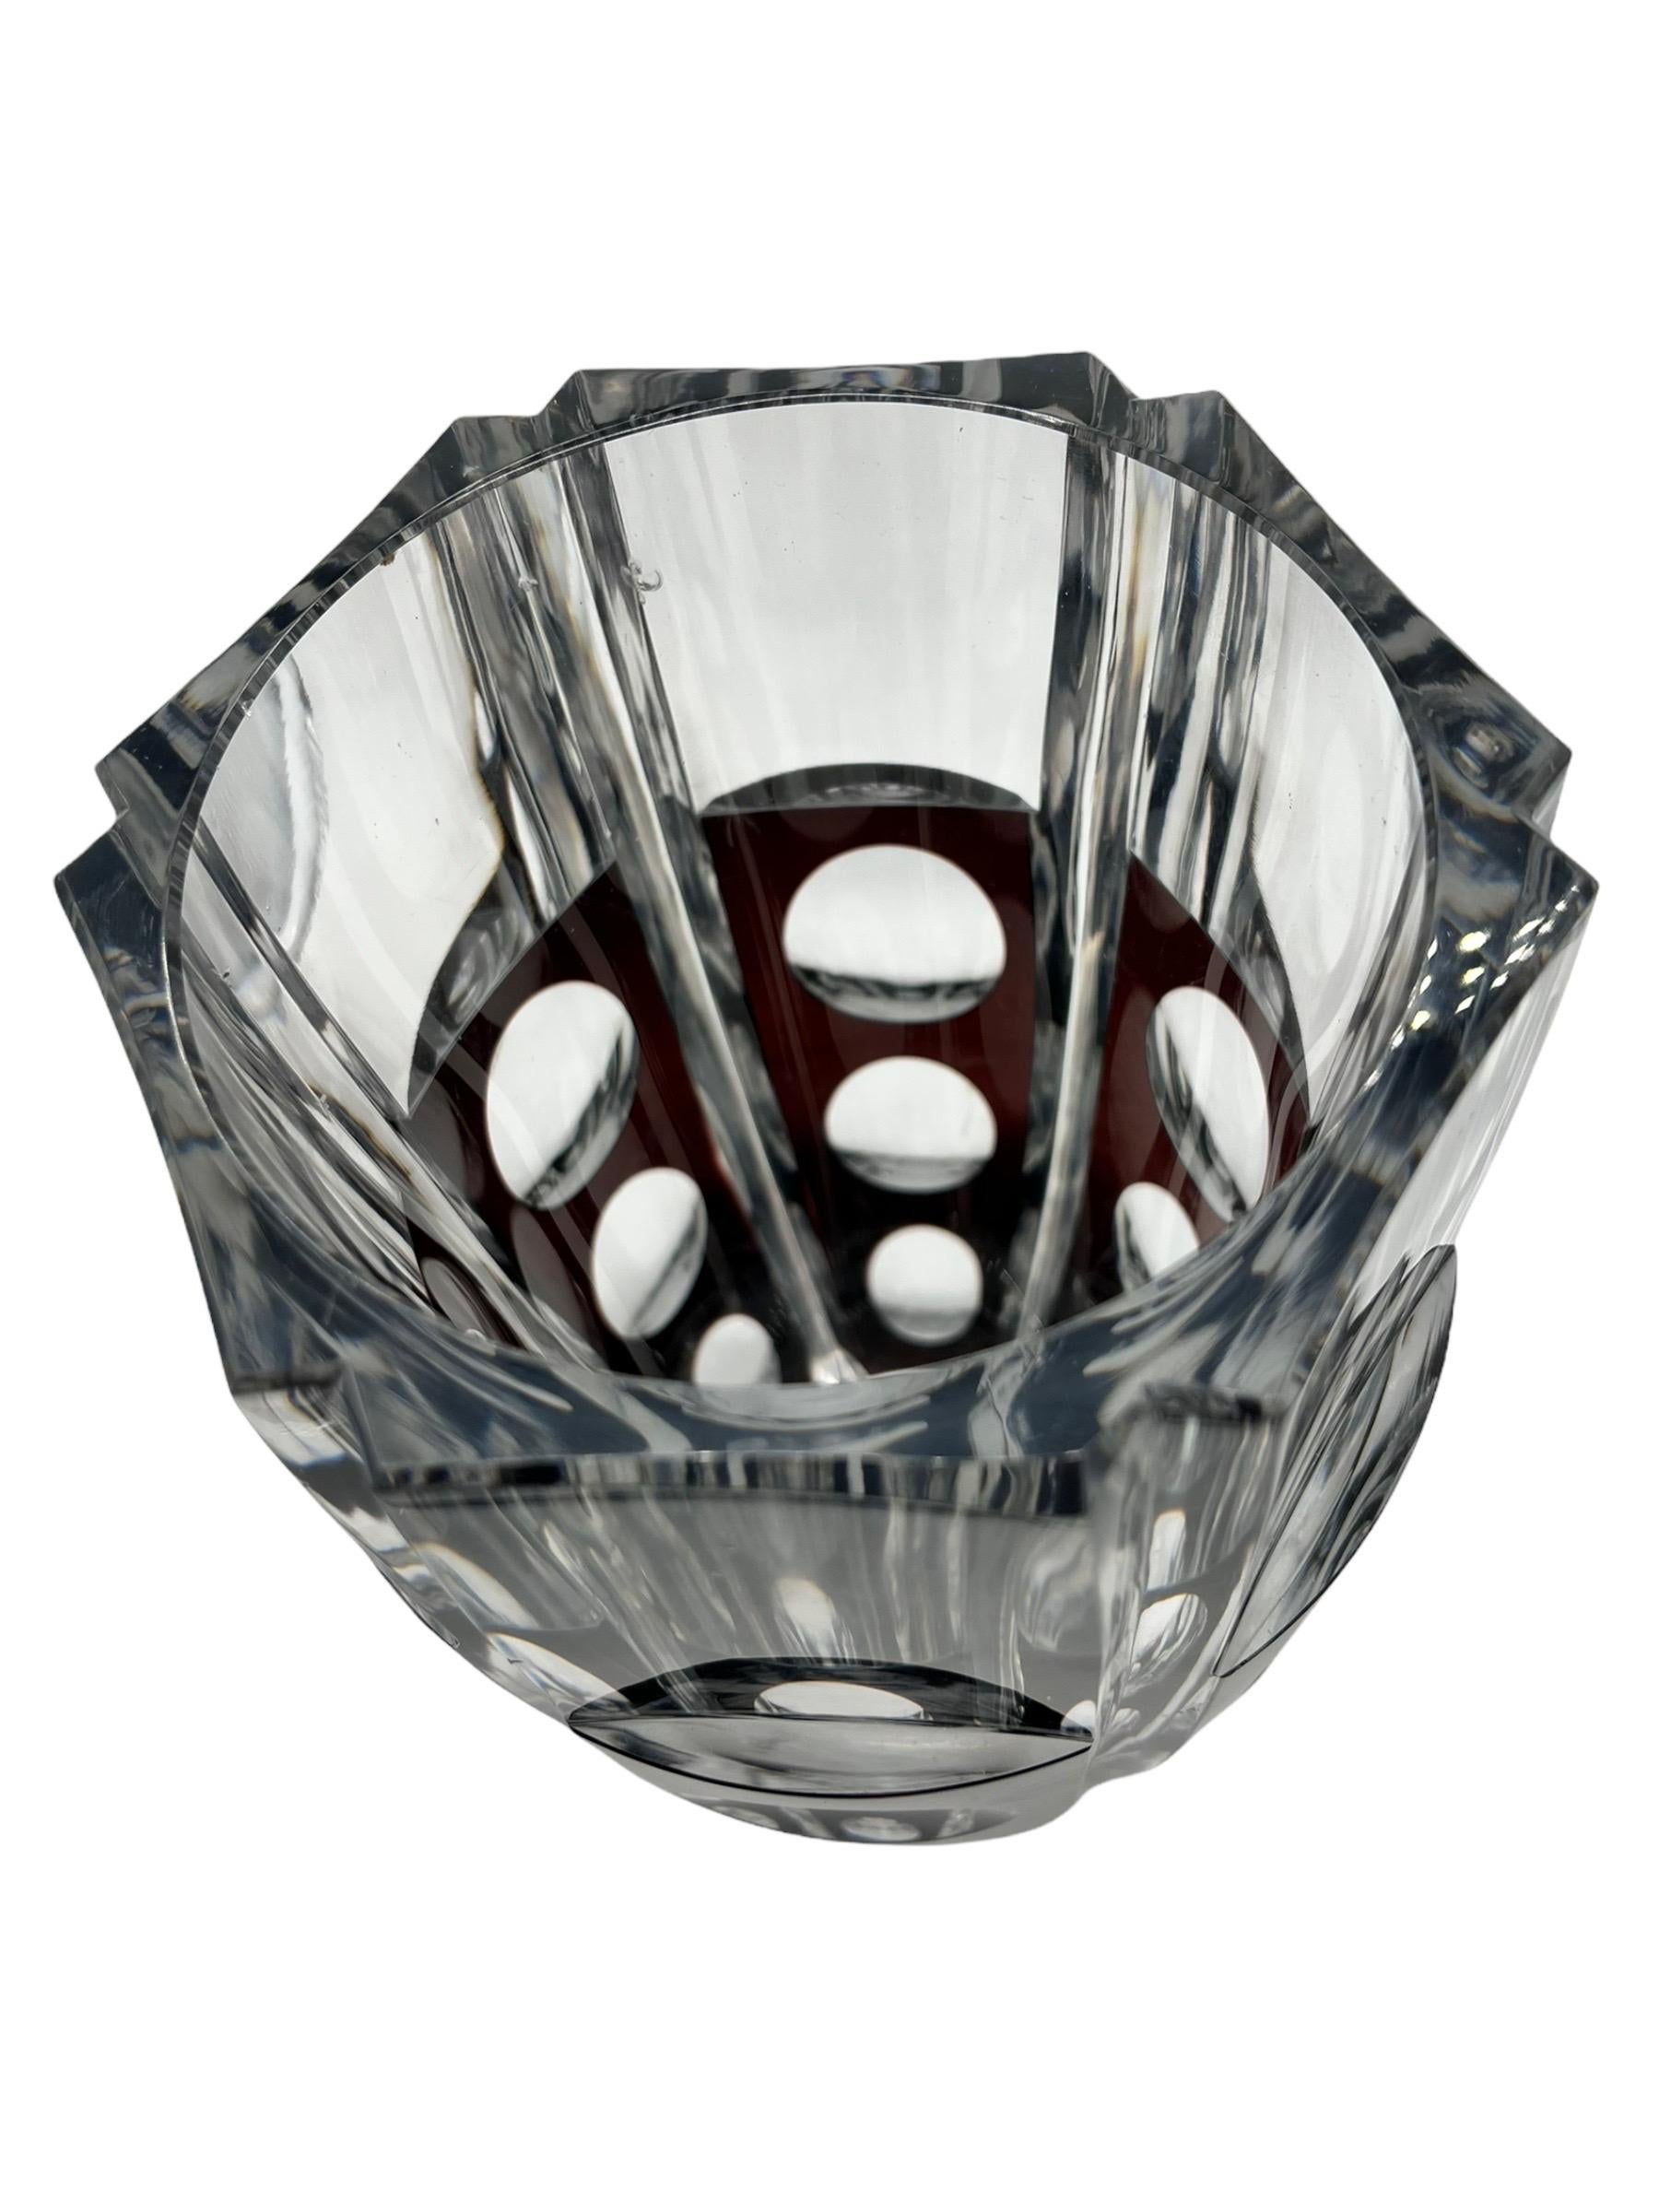 20th Century 1950s Belgian Vase Val Saint Lambert Crystal Vase Designed by Joseph Simon